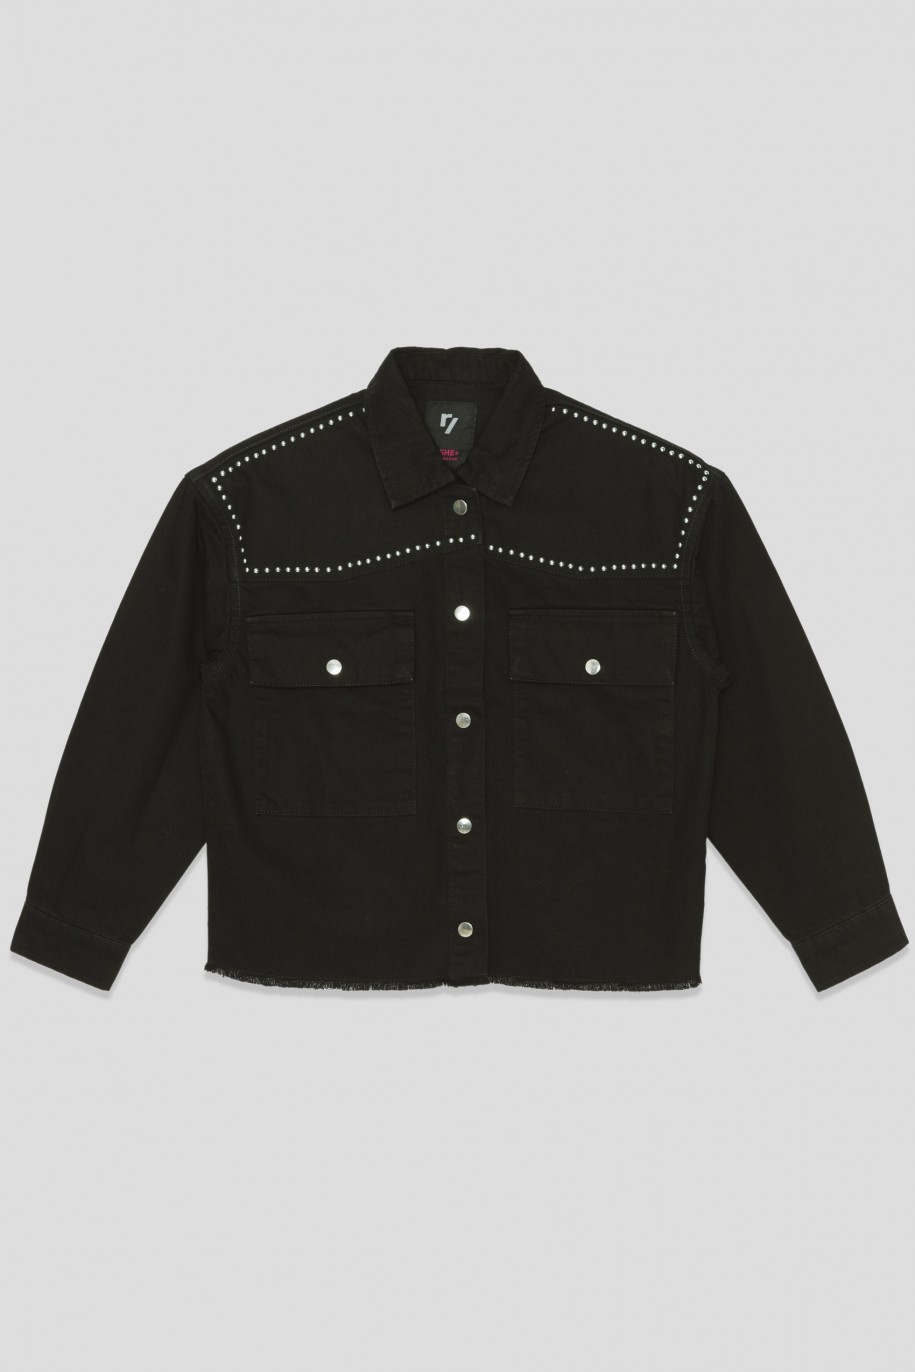 Czarna jeansowa kurtka przejściowa z ozdobnymi nitami - 33186